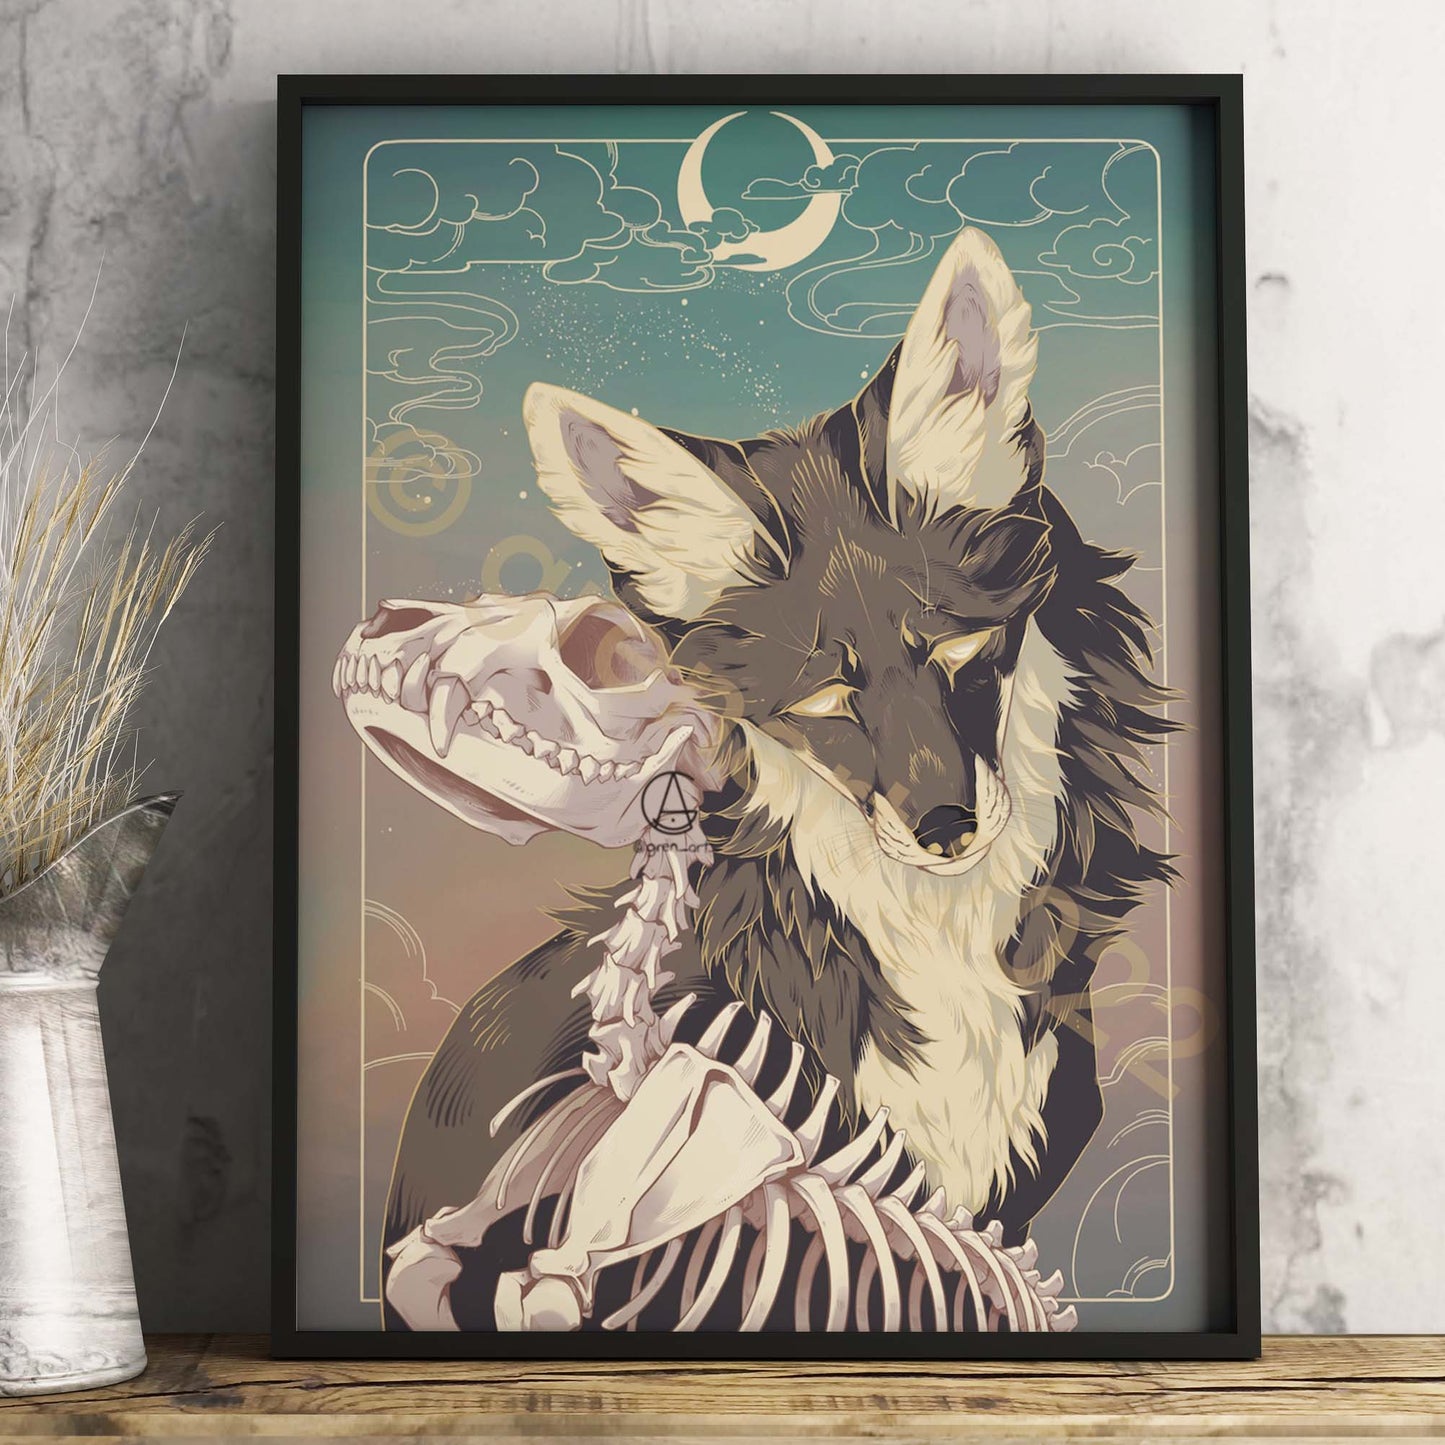 Kunstdruck "Grief Fox" von Gren Art